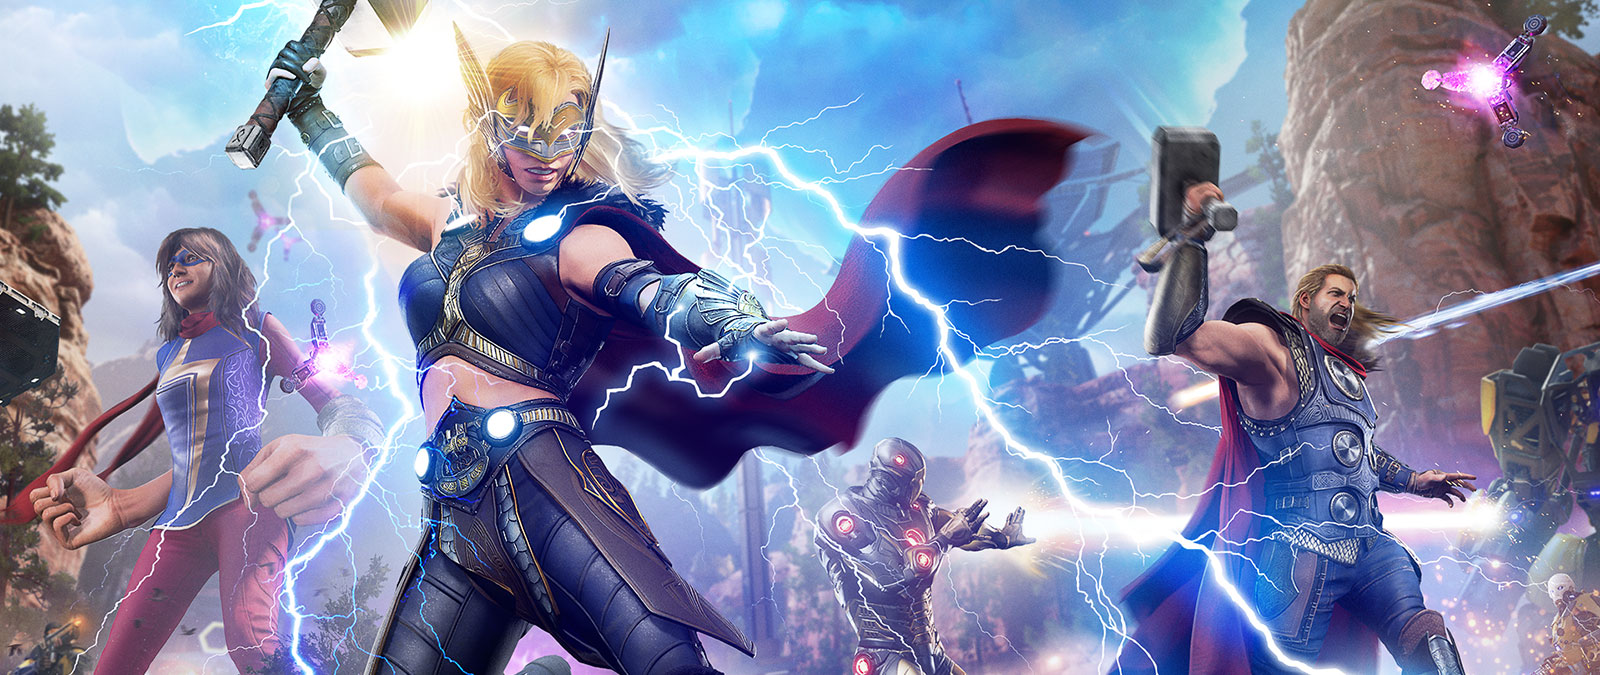 Mighty Thor olan Jane Foster, mekanik bir düşmanın üzerine bir şimşek salıyor.